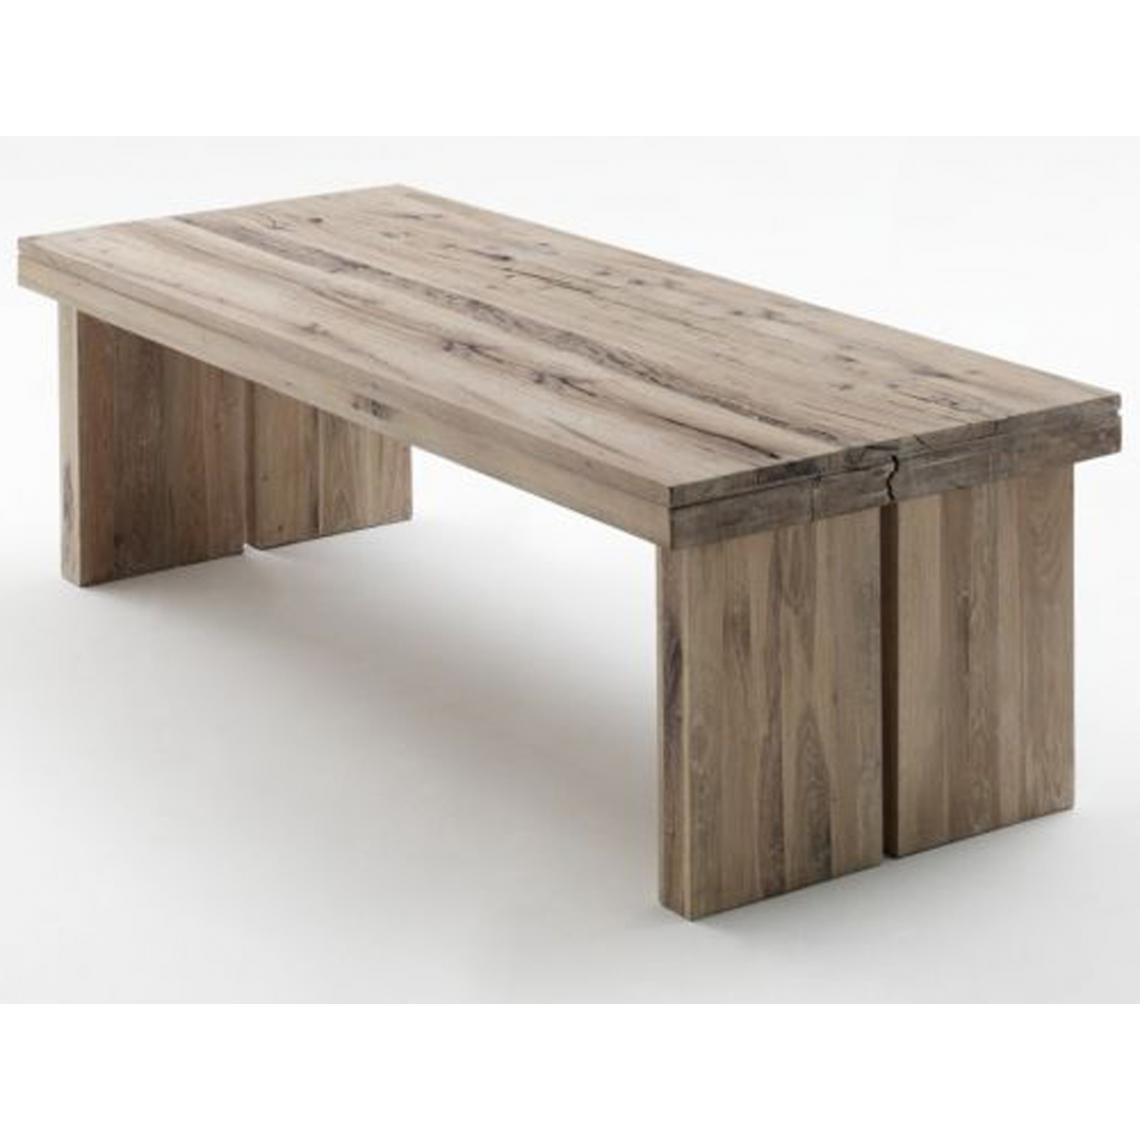 Pegane - Table à manger rectangulaire en chêne chaulé laqué - L.260 x H.76 x P.100 cm - Tables à manger